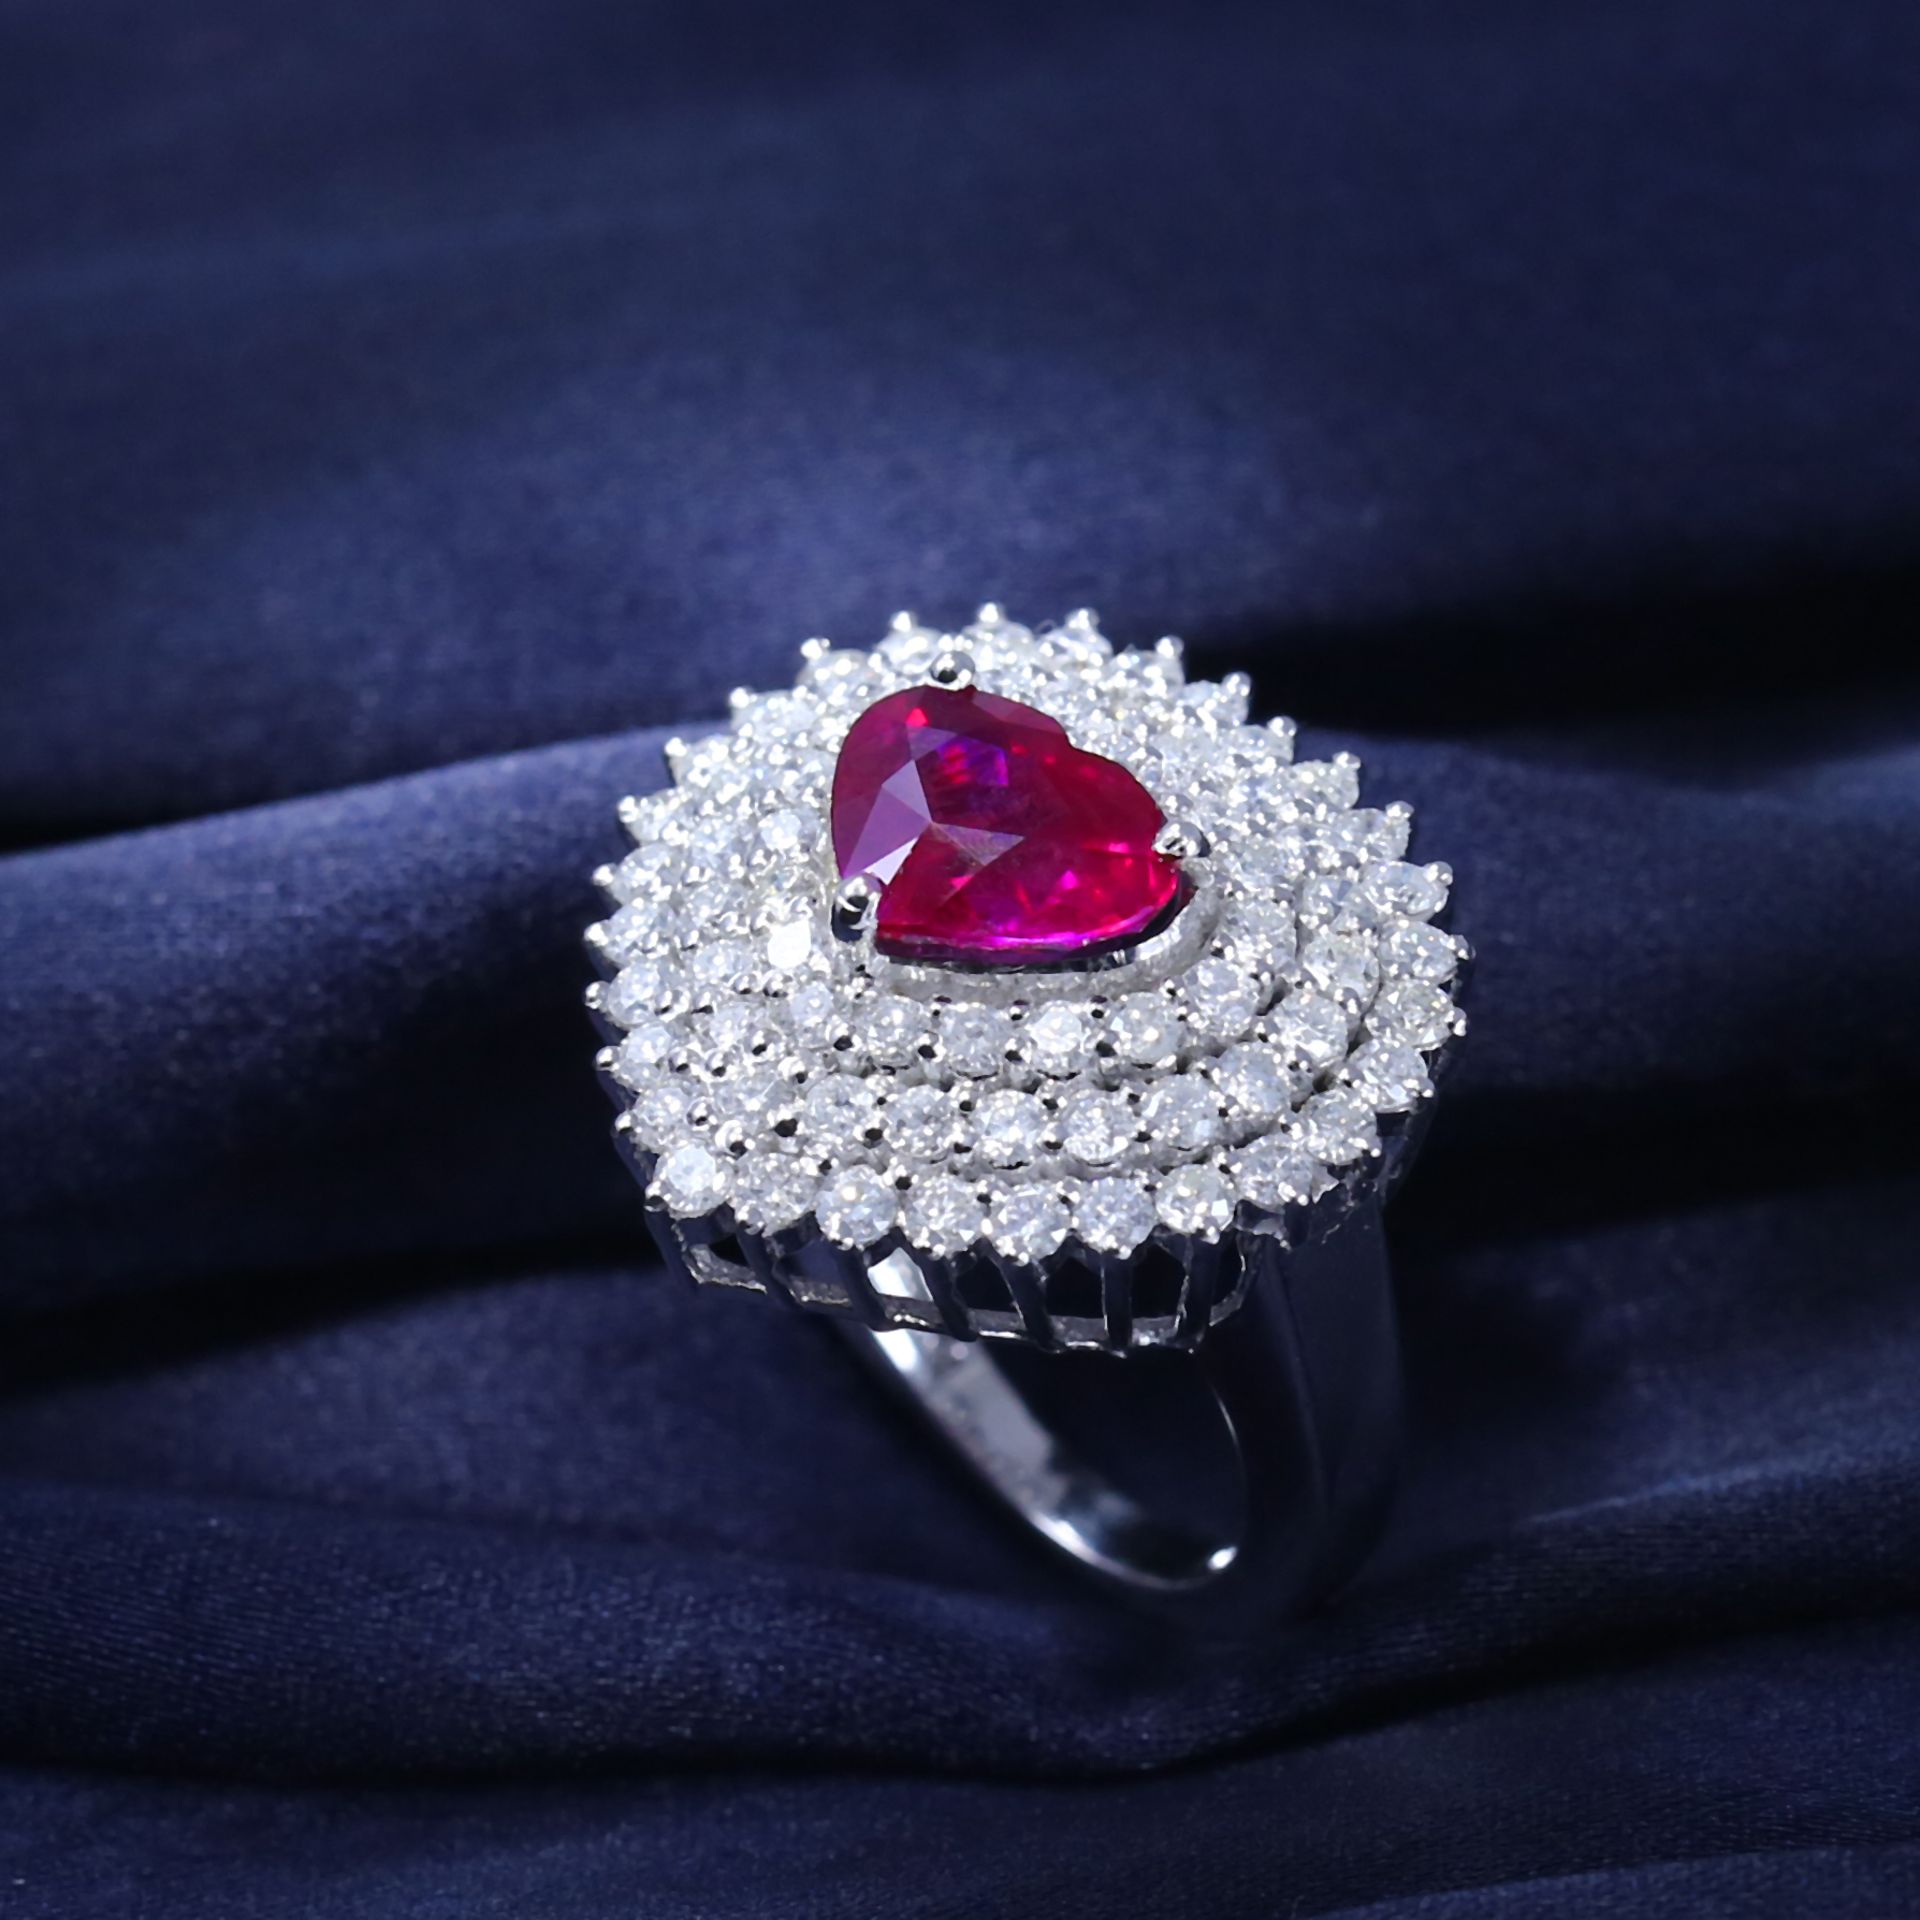 14 K / 585 White Gold Designer Ruby (GRS Certified) & Diamond Ring - Image 7 of 10